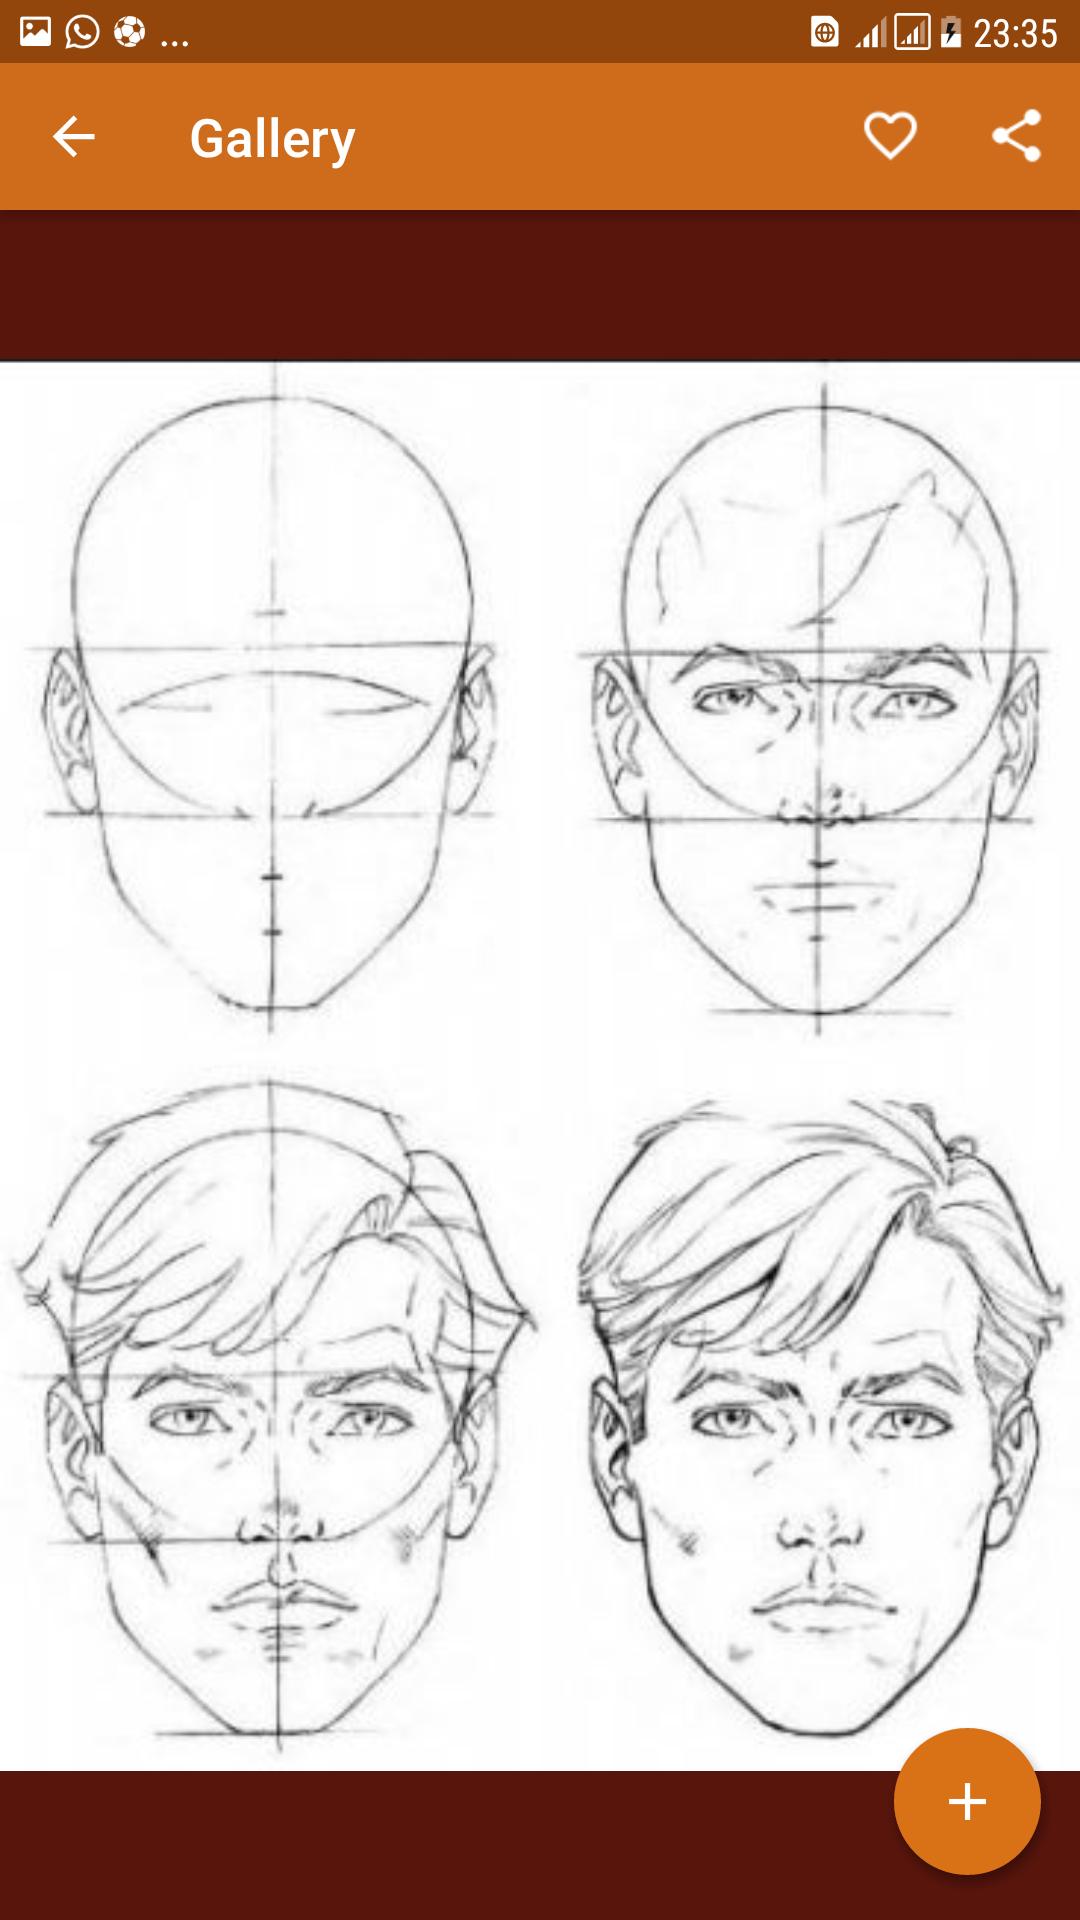 Этапы рисования лица